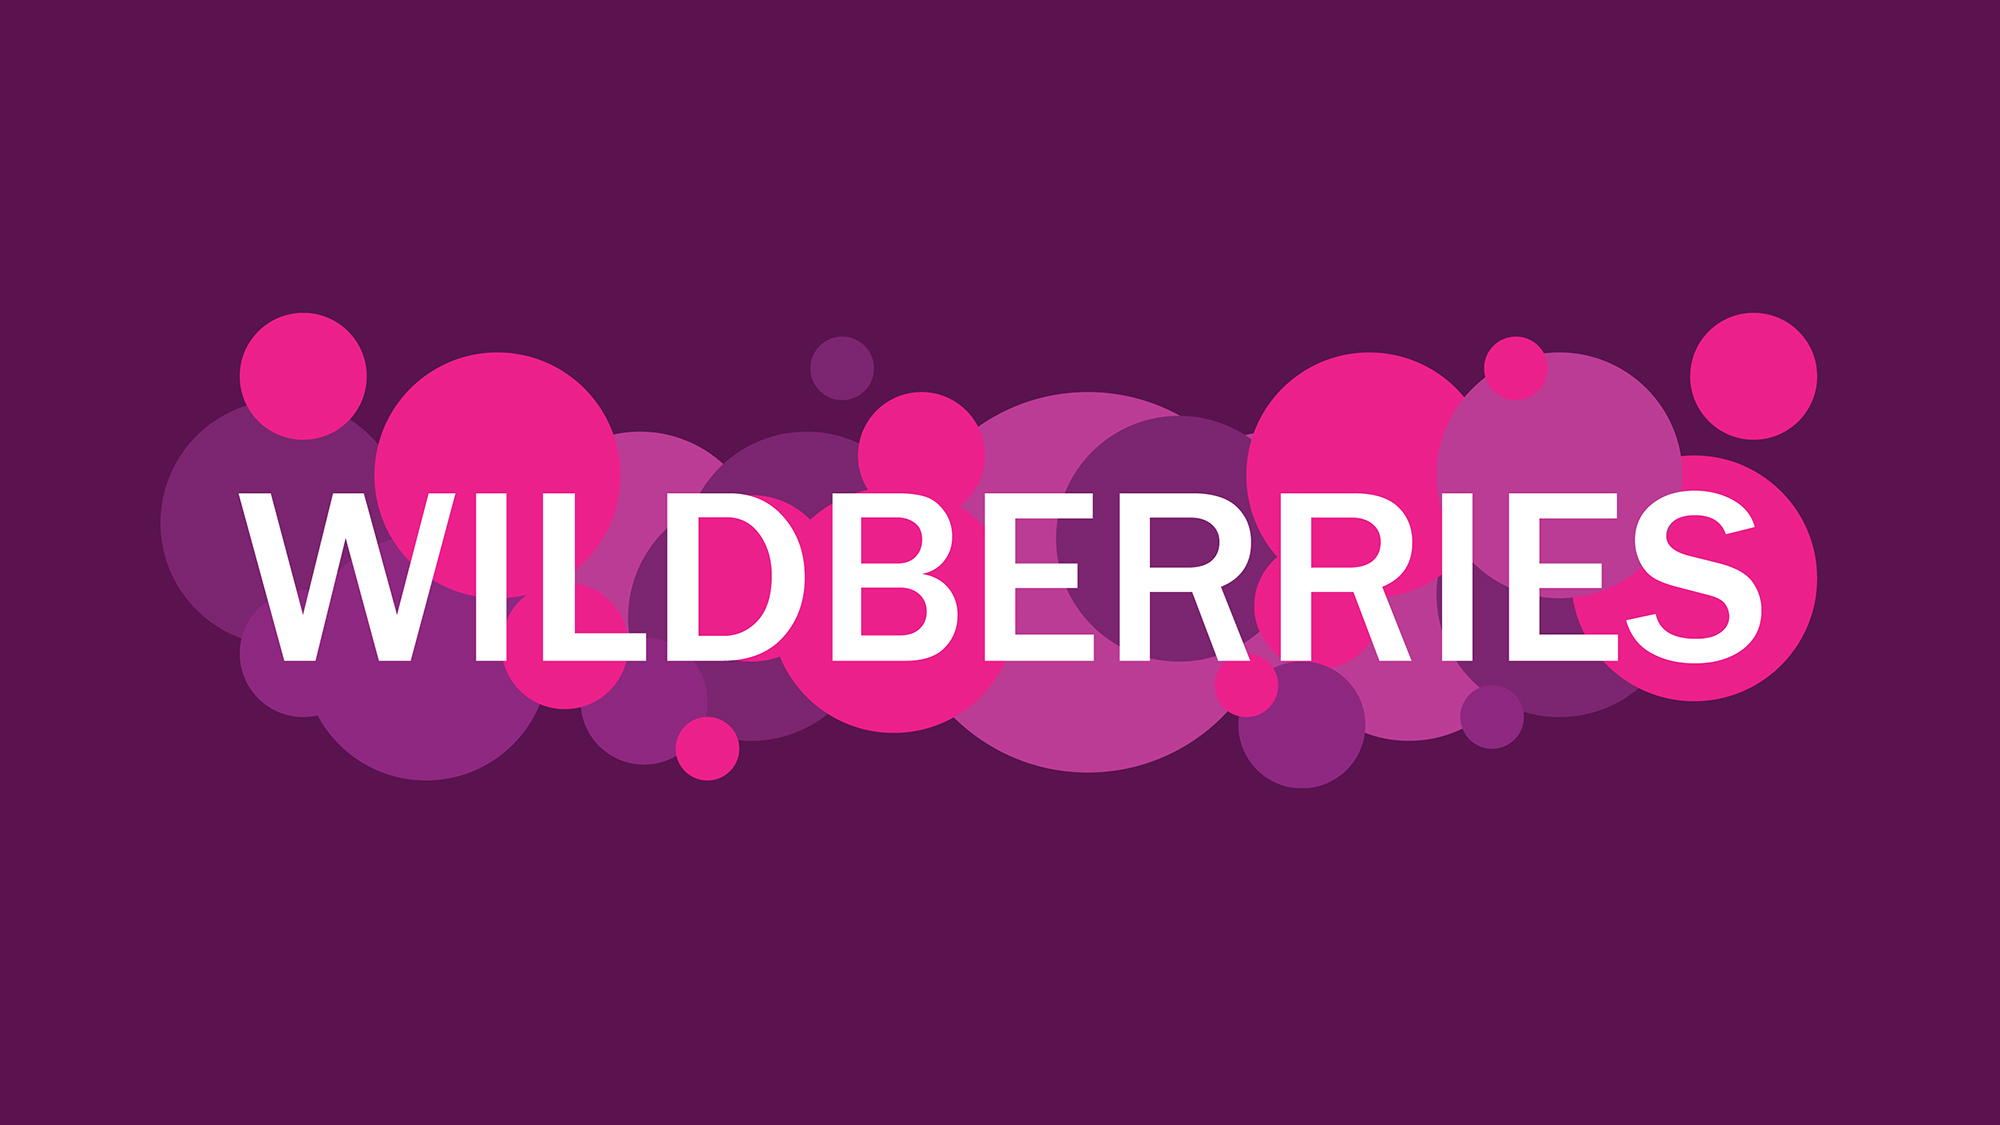 Создание качественного и привлекательного описания товара для платформы Wildberries